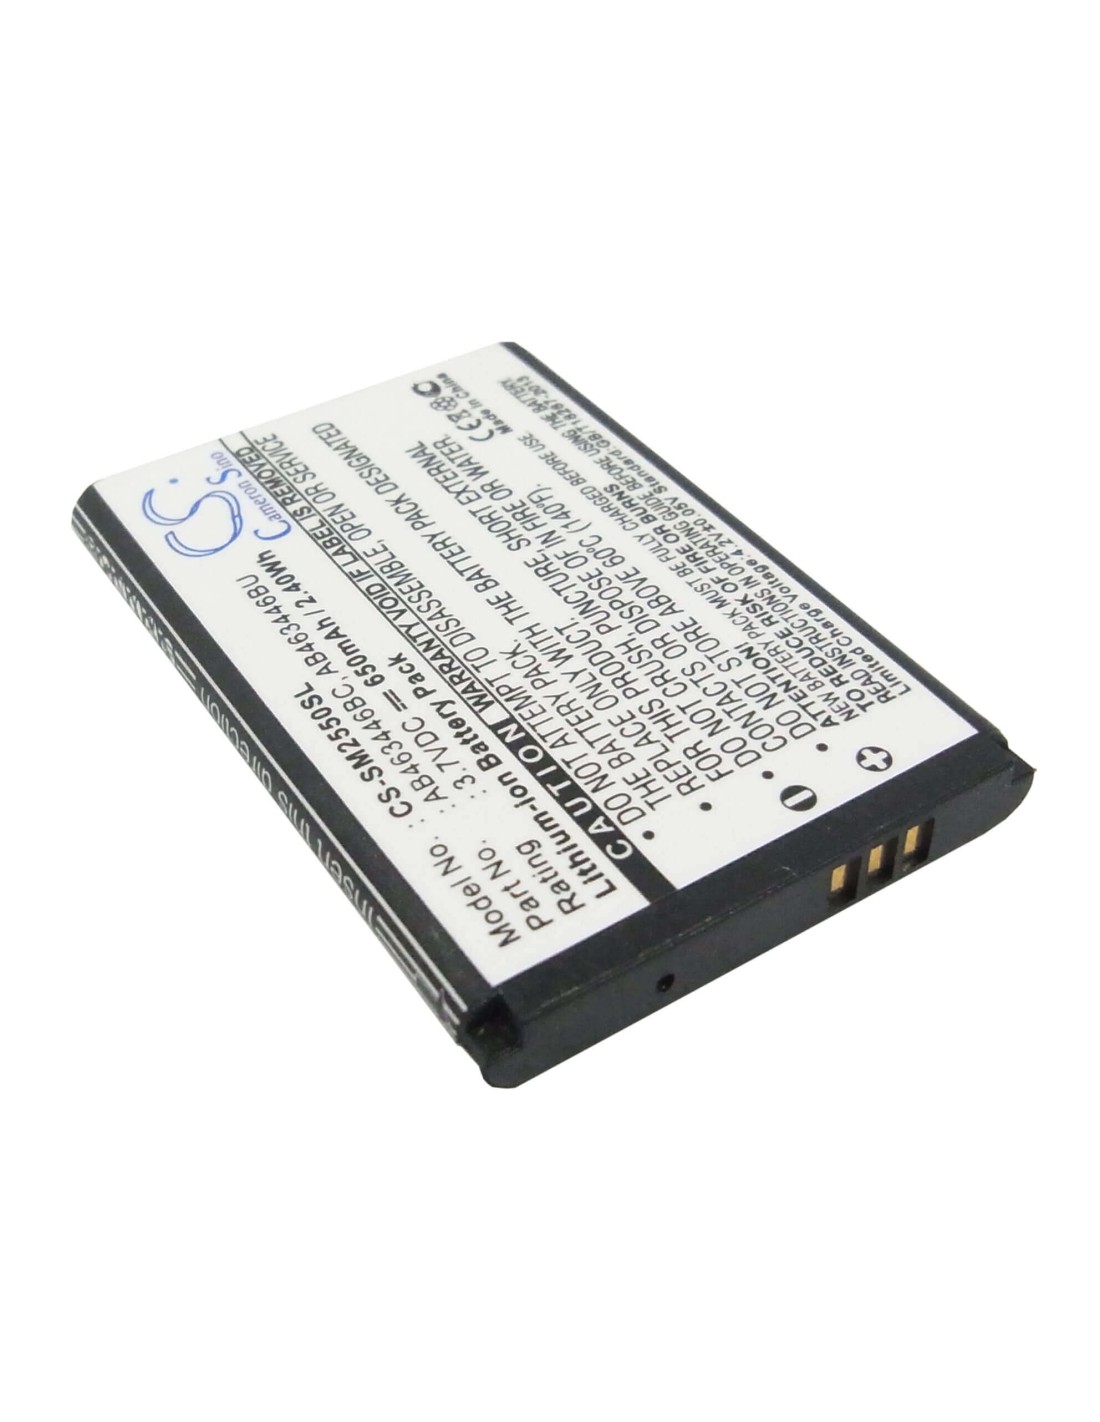 Battery for Samsung GT-E2520, GT-M2510, GT-E1150 3.7V, 650mAh - 2.41Wh